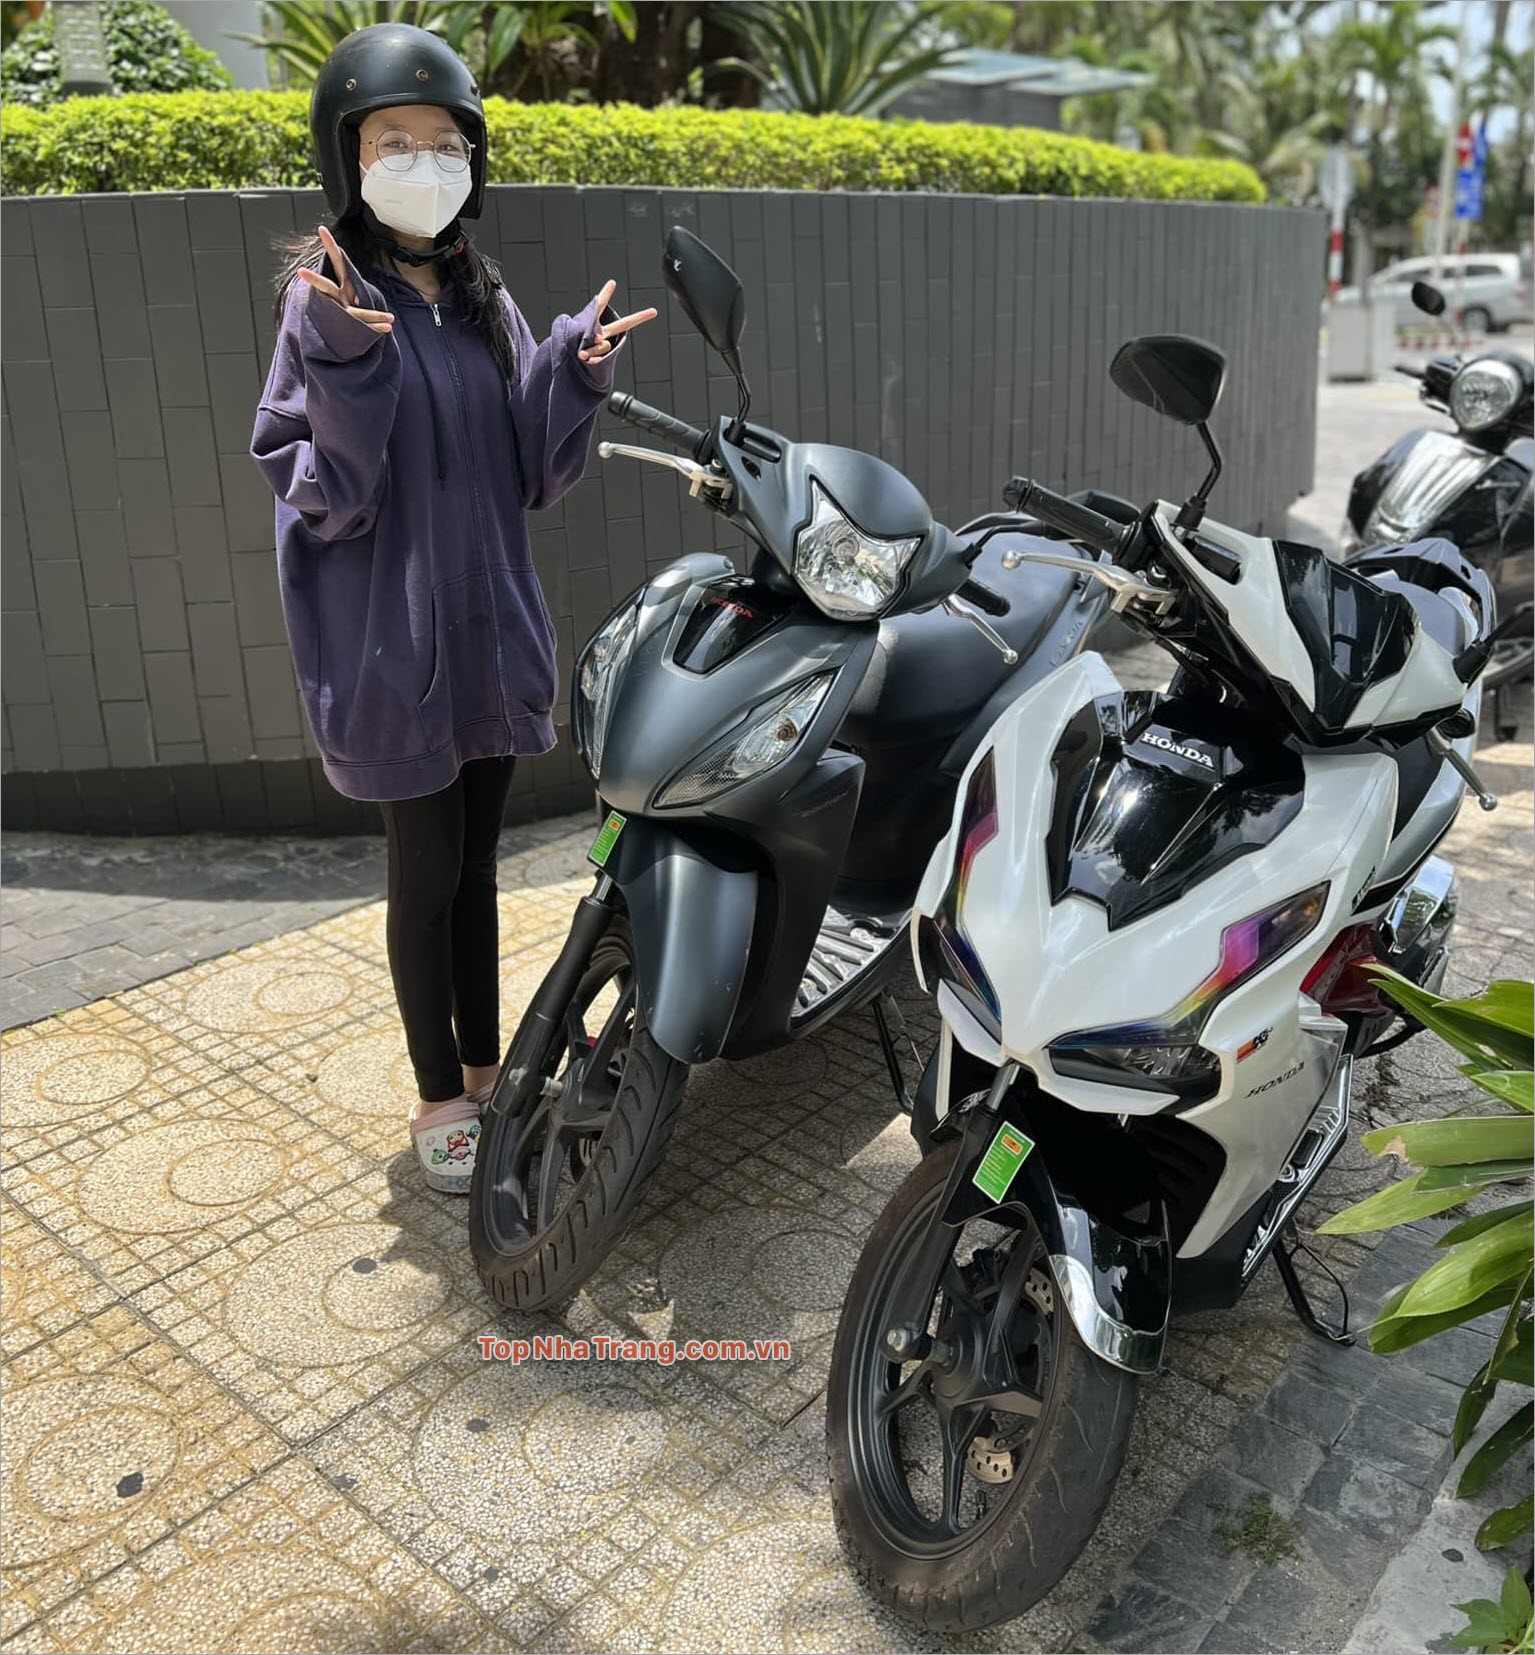 Motobike Forrent – Thuê xe máy Nha Trang chất lượng cao